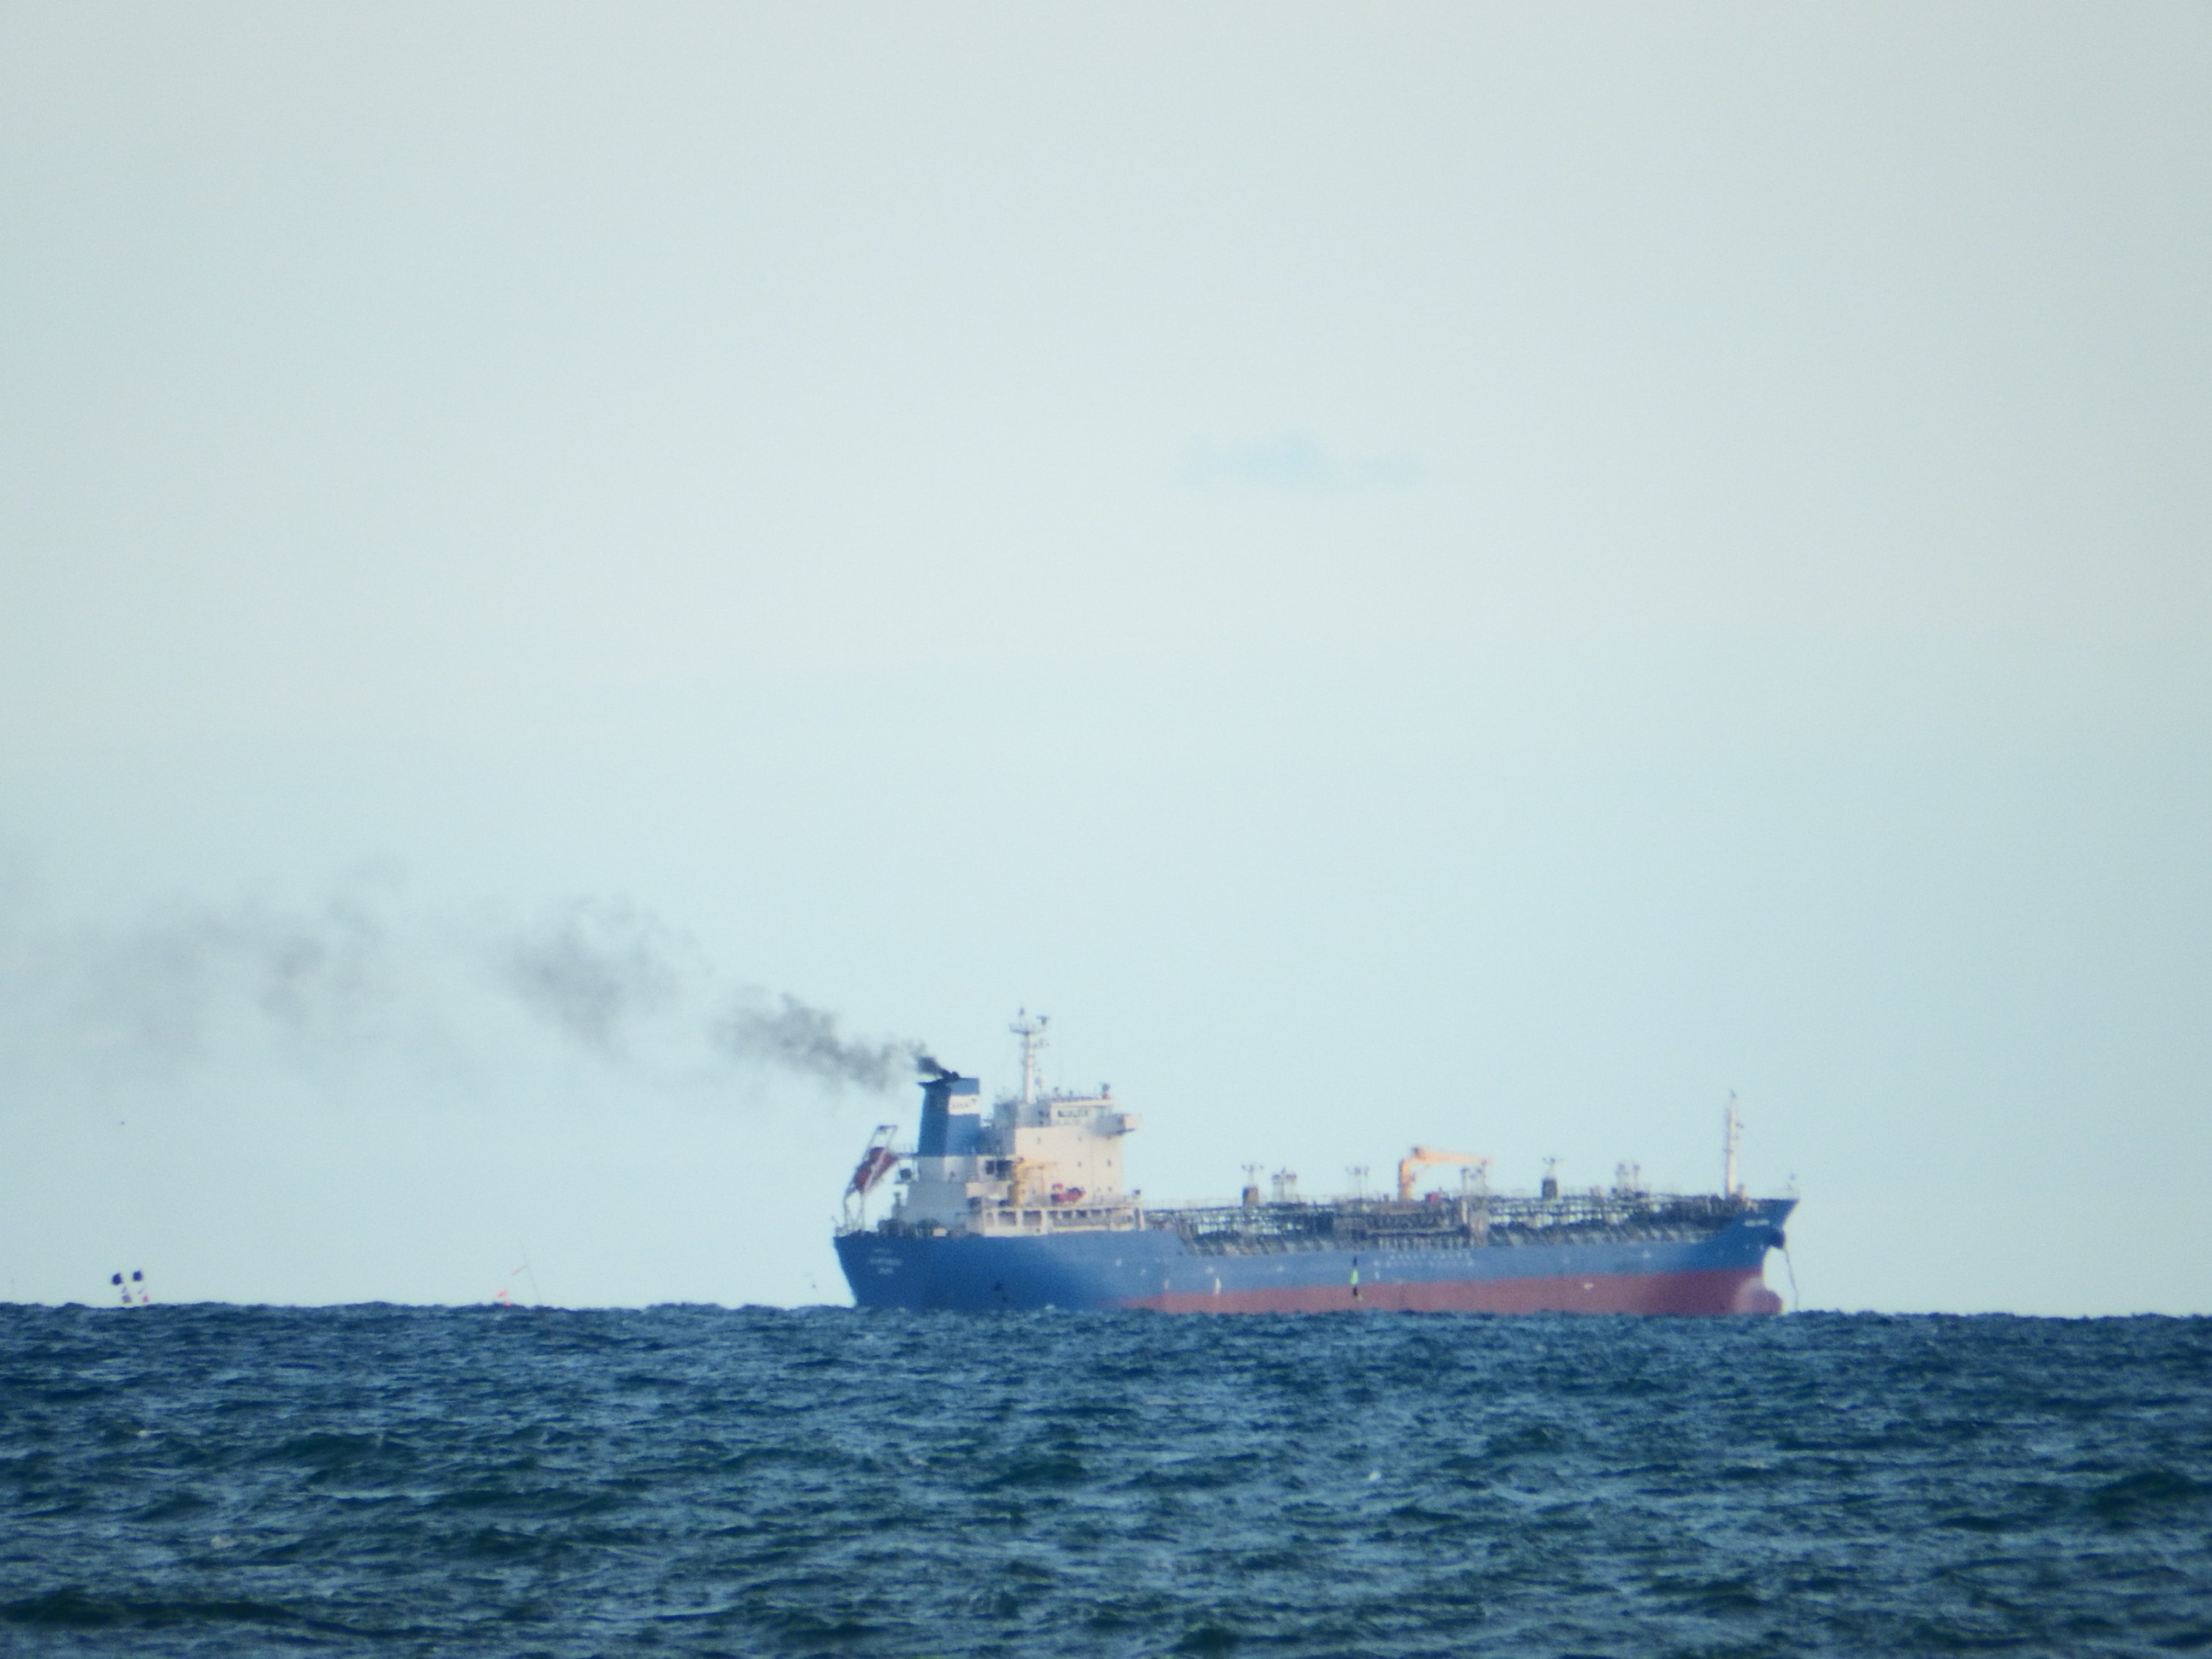 Cargo ship at sea photo